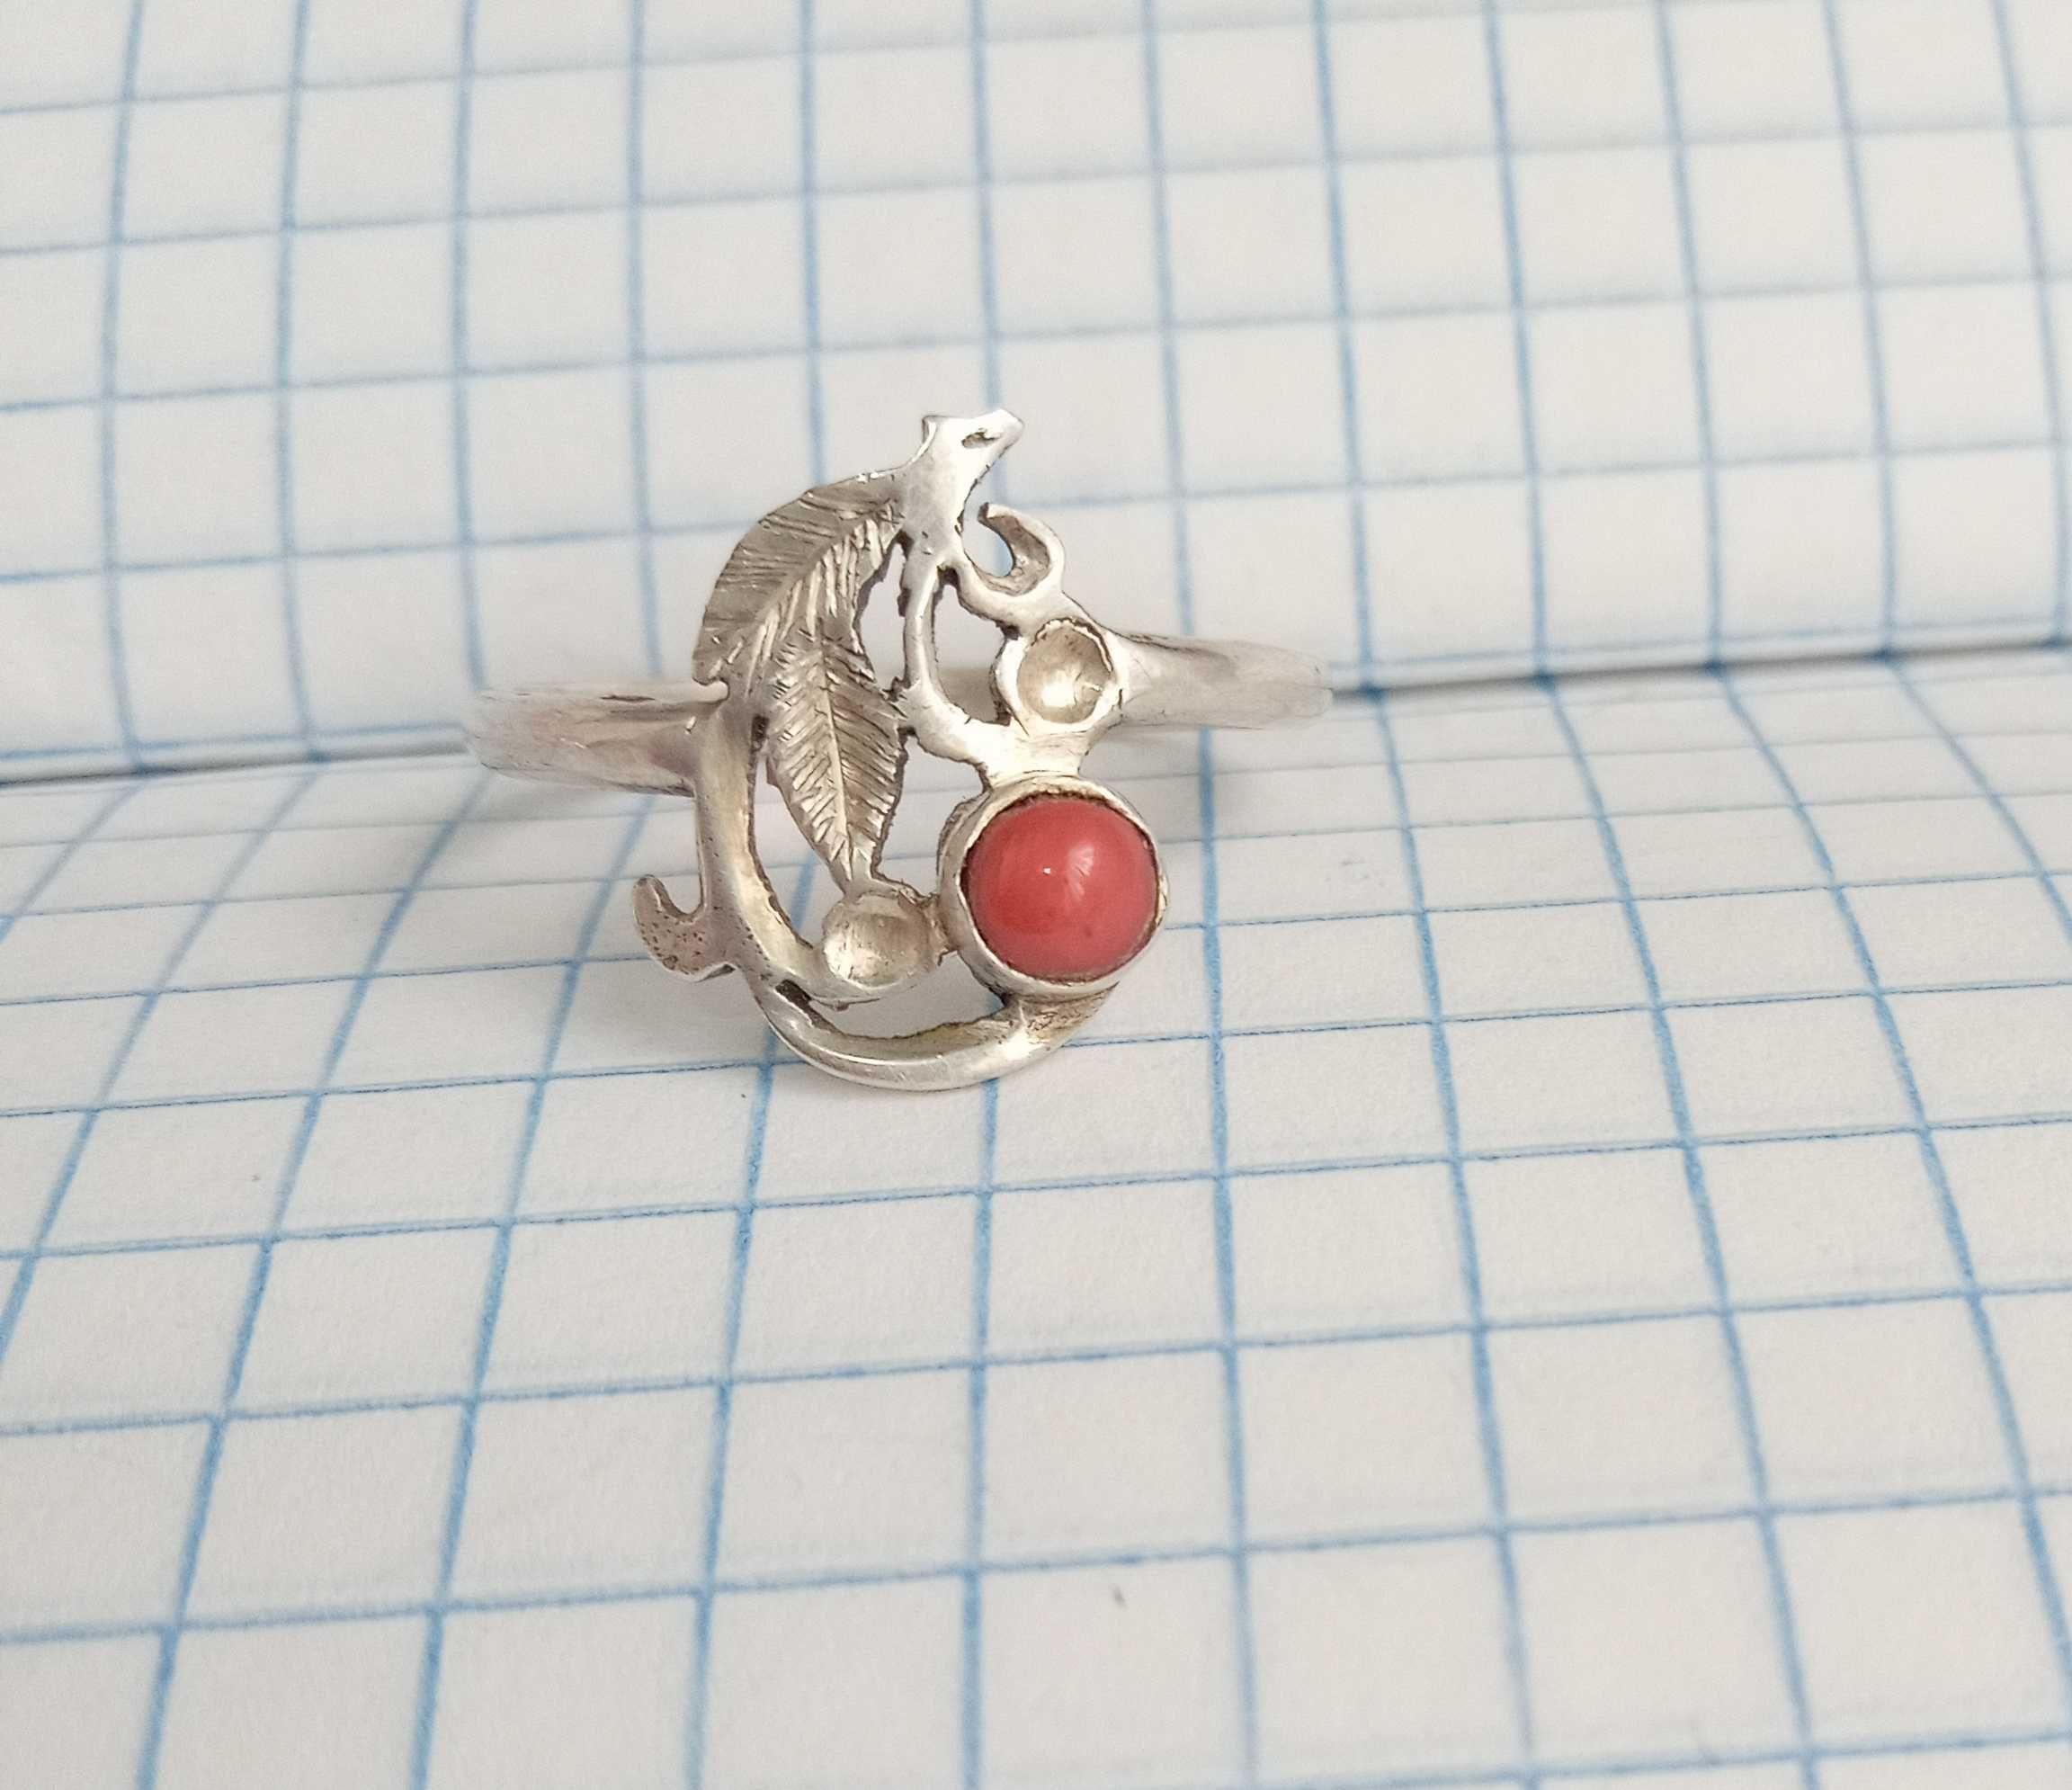 Колечко кольцо с натуральным кораллом серебро 19 размер, винтаж